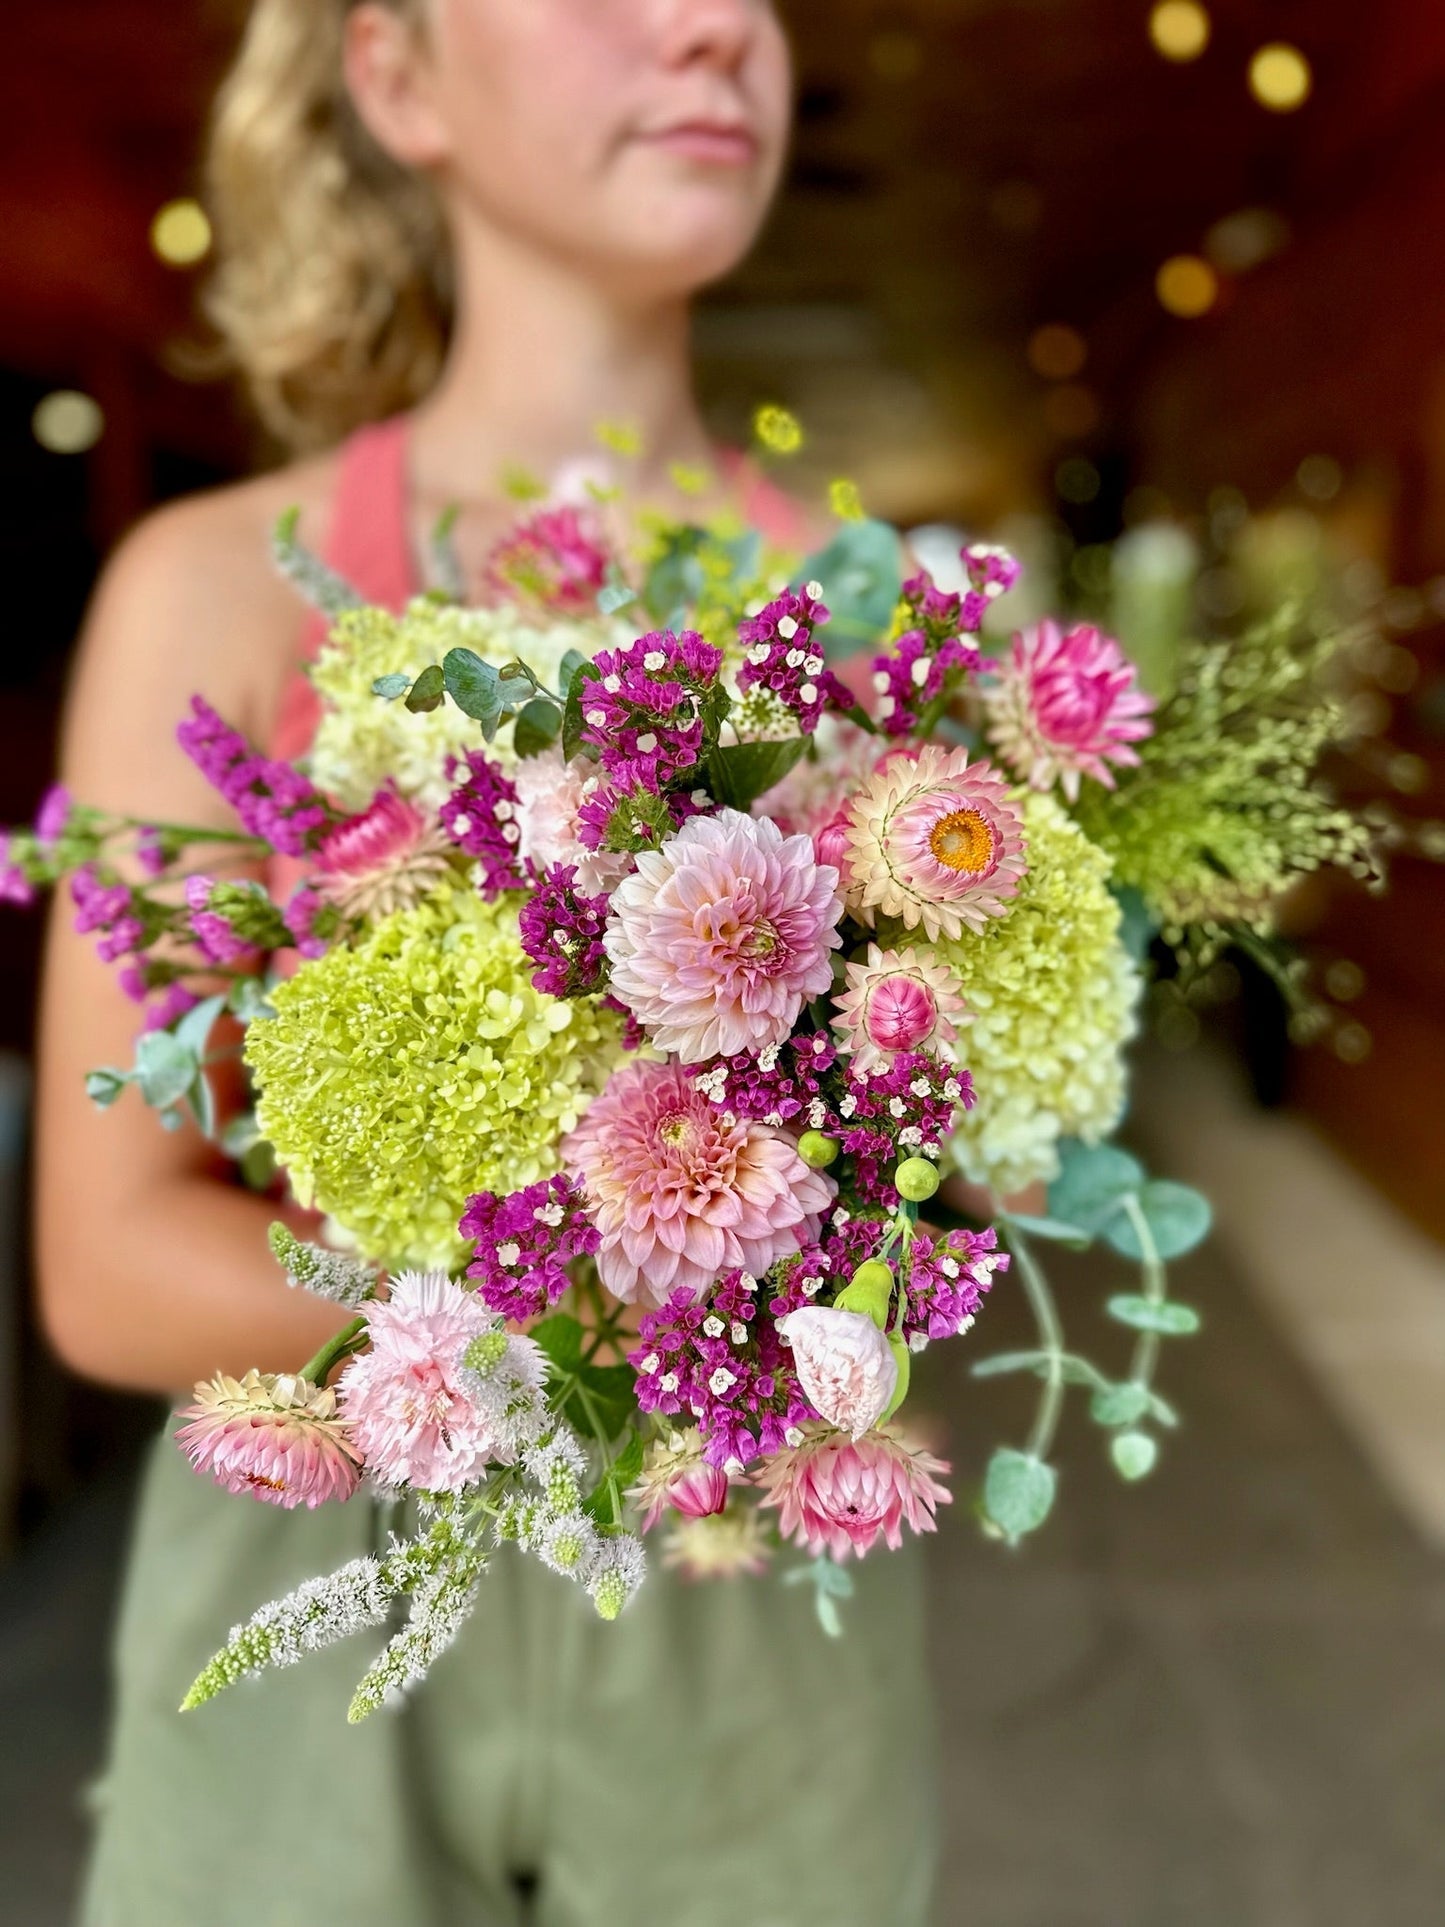 Summer CSA: Weekly Bouquet Share